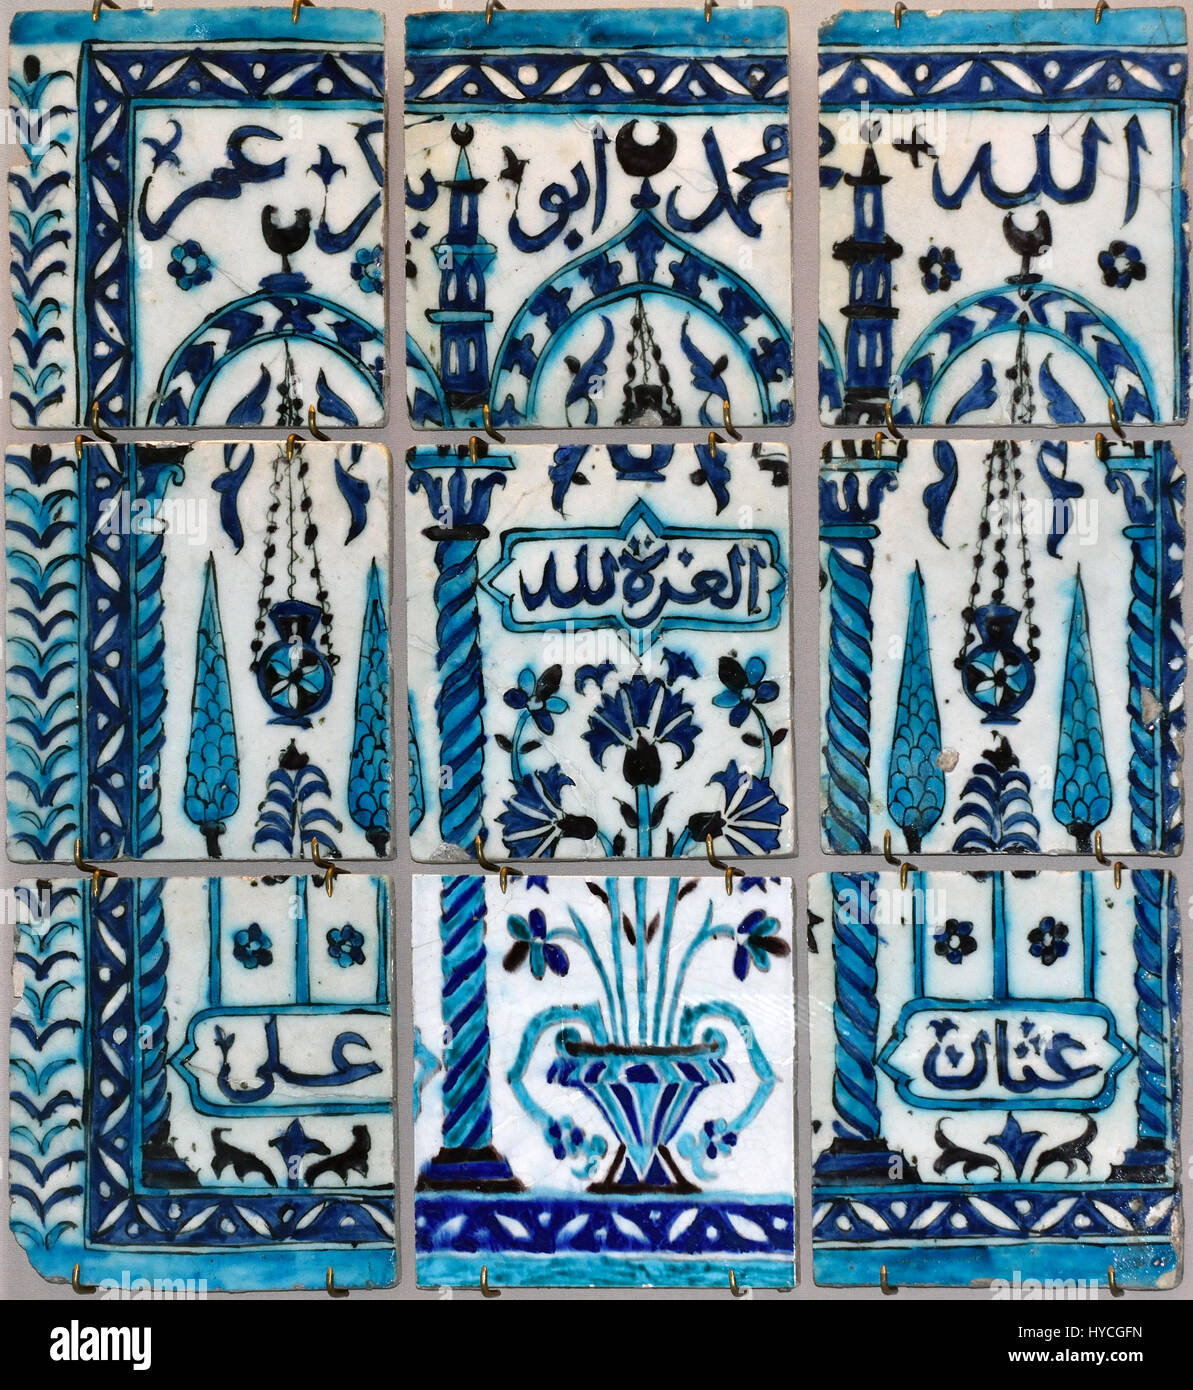 Carreaux de céramique émaillés peint sous glaçure turquoise en manganèse et cobalt. Inscrits les noms et Muhammad Abu Bakr. Iznik dynastie ottomane 17 / 18e siècle fait en Syrie Syrie : Banque D'Images